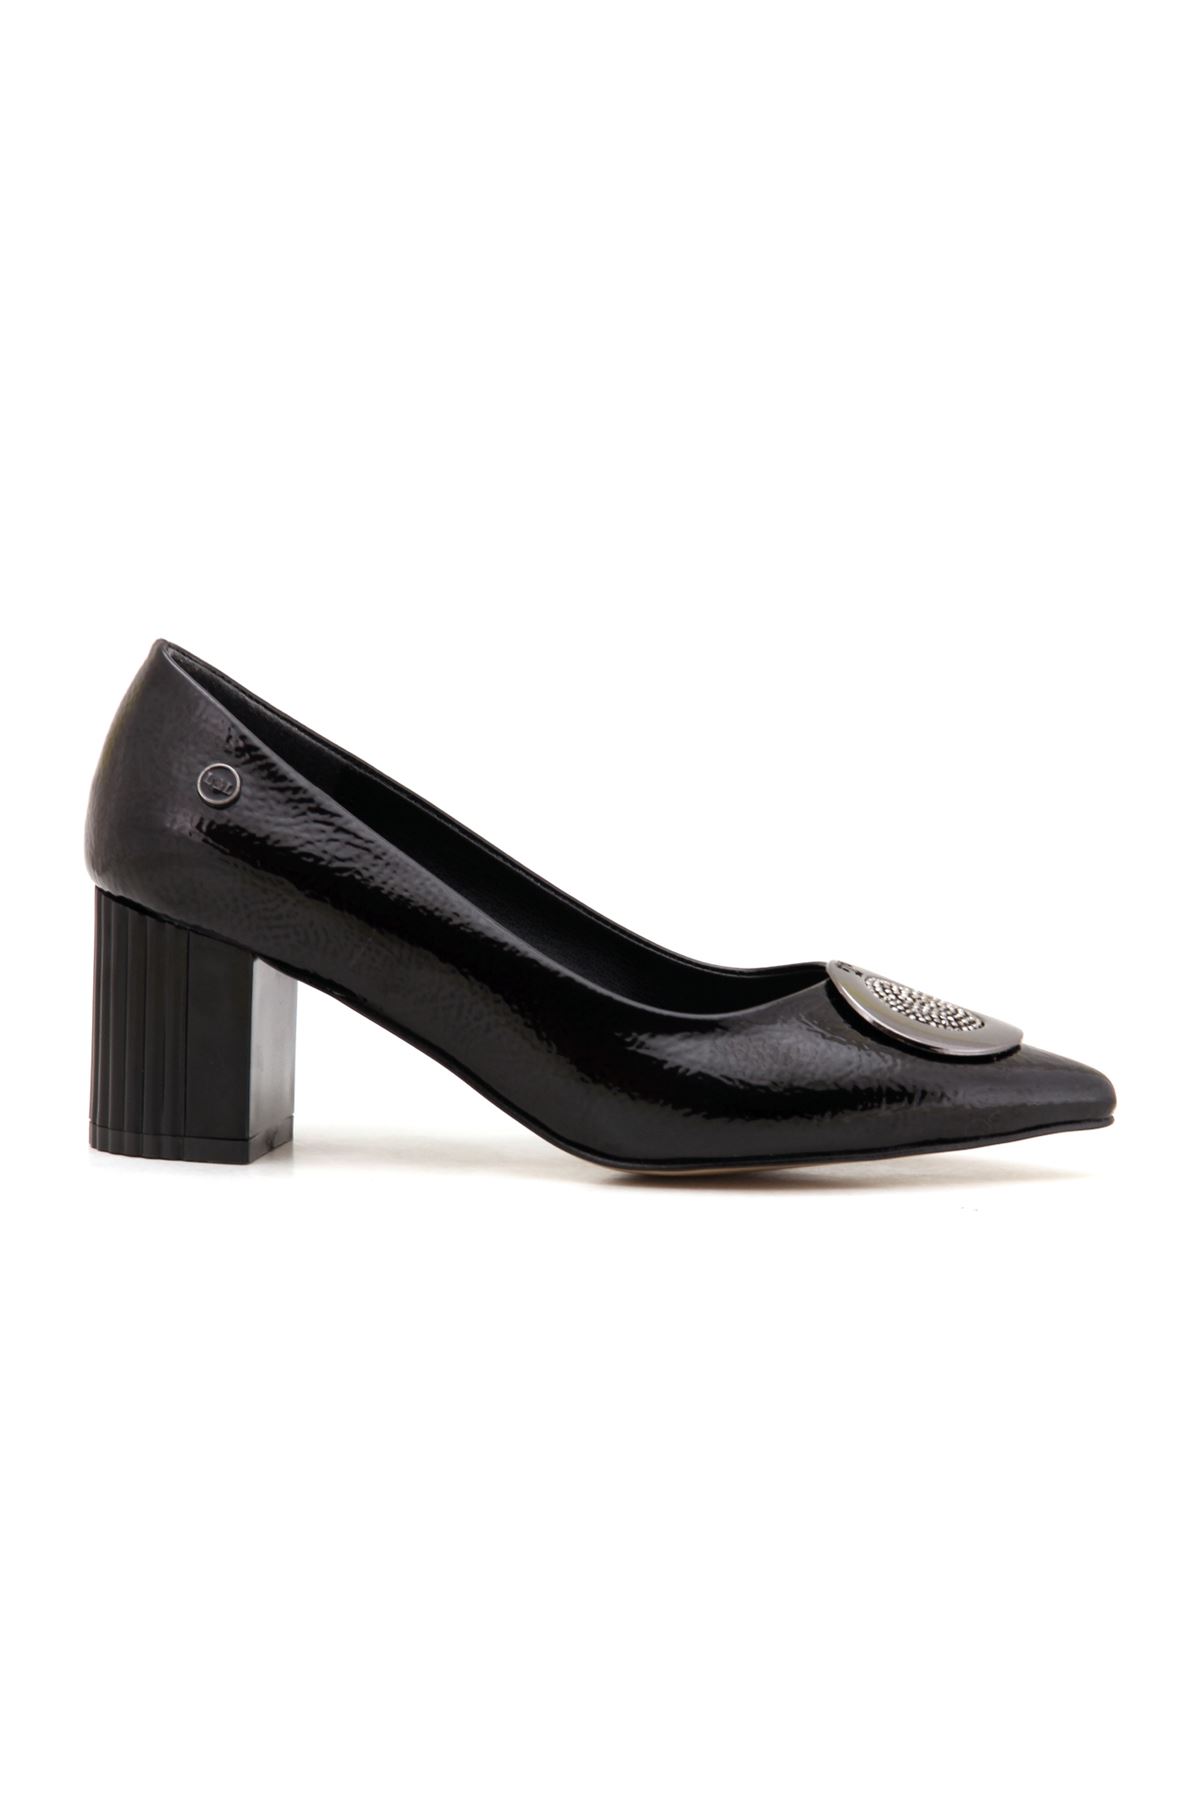 L&L 112 Topuklu Kadın Ayakkabı  - Siyah Rugan